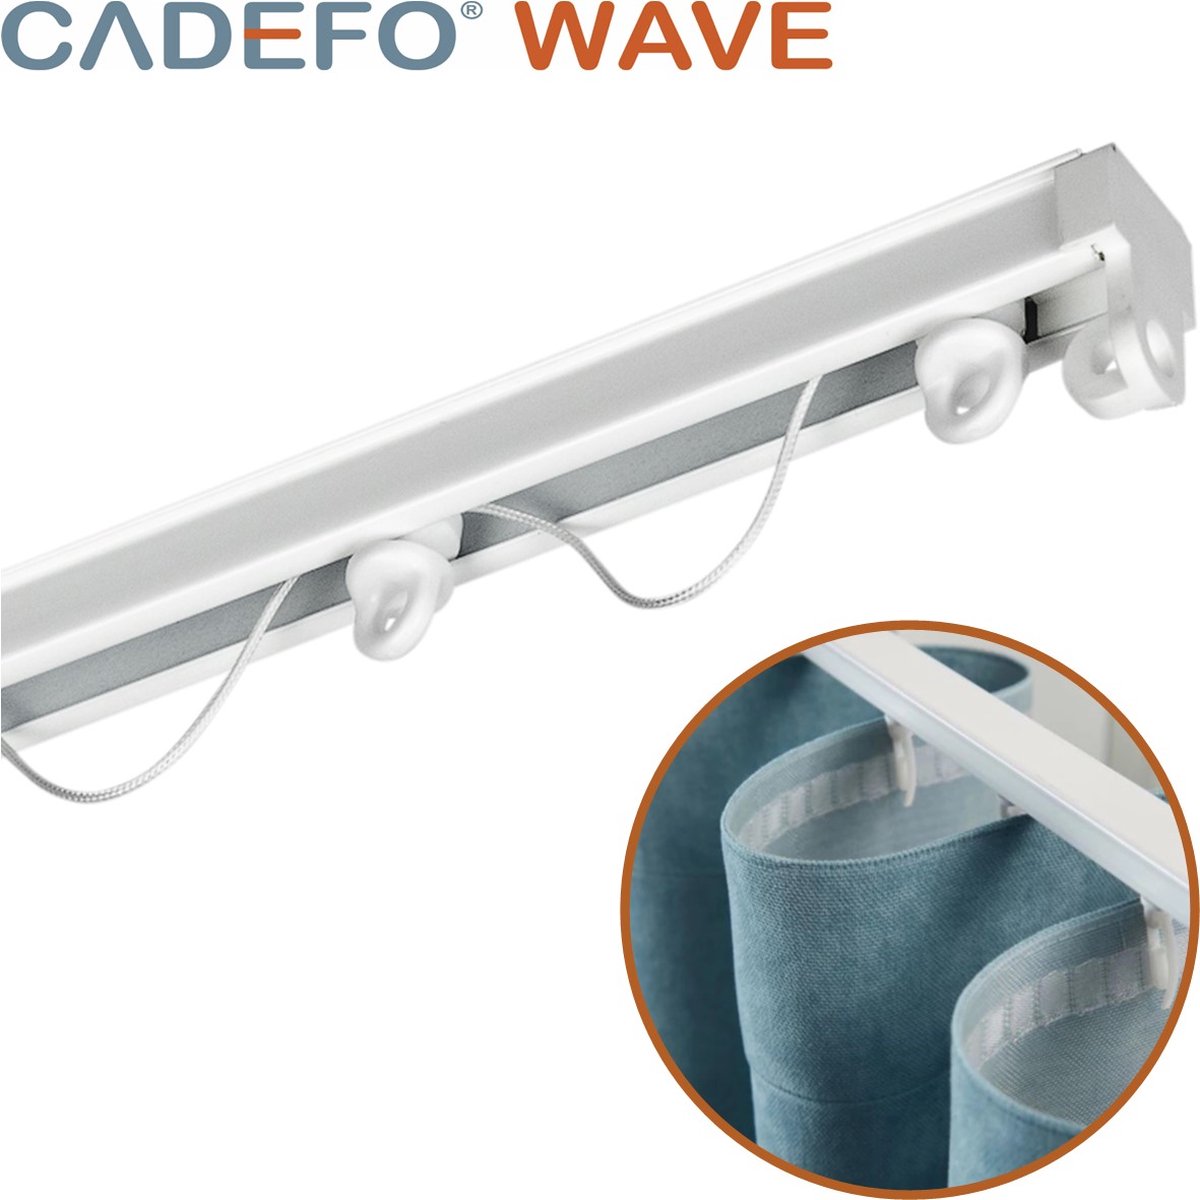 CADEFO WAVE (551 - 600 cm) Gordijnrails - Compleet op maat! - UIT 1 STUK - Leverbaar tot 6 meter - Plafondbevestiging - Lengte 594 cm